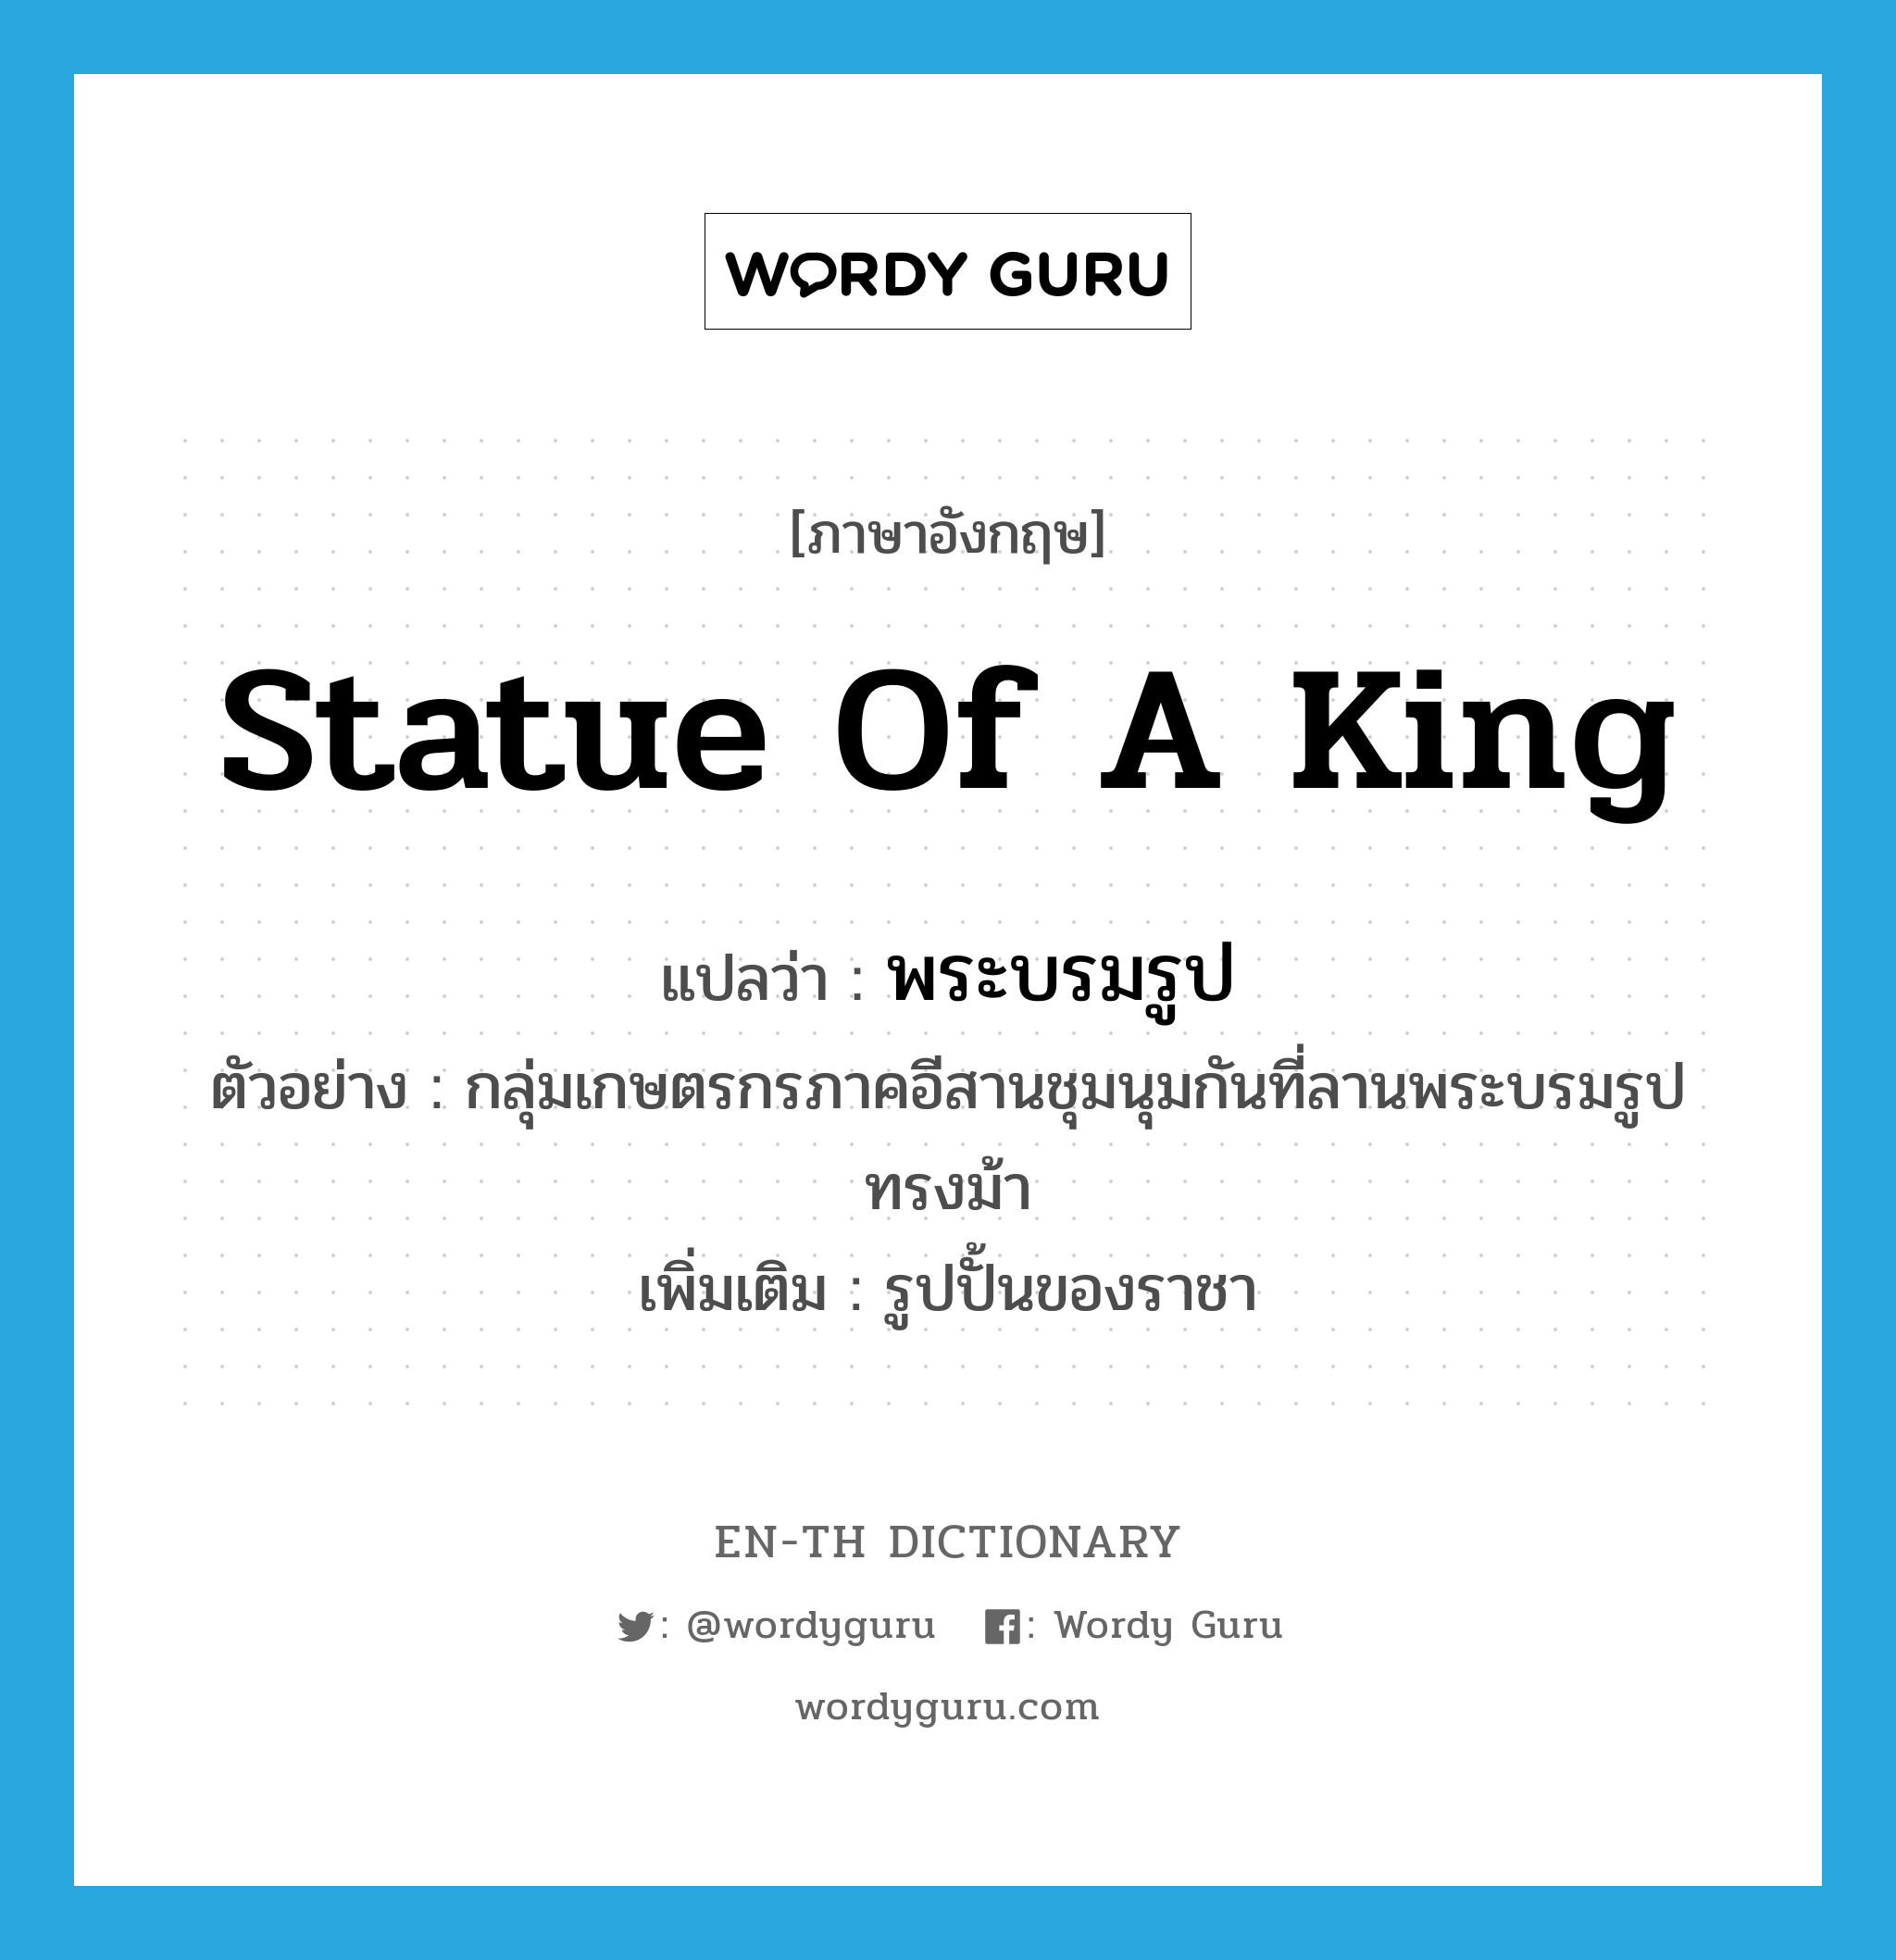 statue of a king แปลว่า?, คำศัพท์ภาษาอังกฤษ statue of a king แปลว่า พระบรมรูป ประเภท N ตัวอย่าง กลุ่มเกษตรกรภาคอีสานชุมนุมกันที่ลานพระบรมรูปทรงม้า เพิ่มเติม รูปปั้นของราชา หมวด N